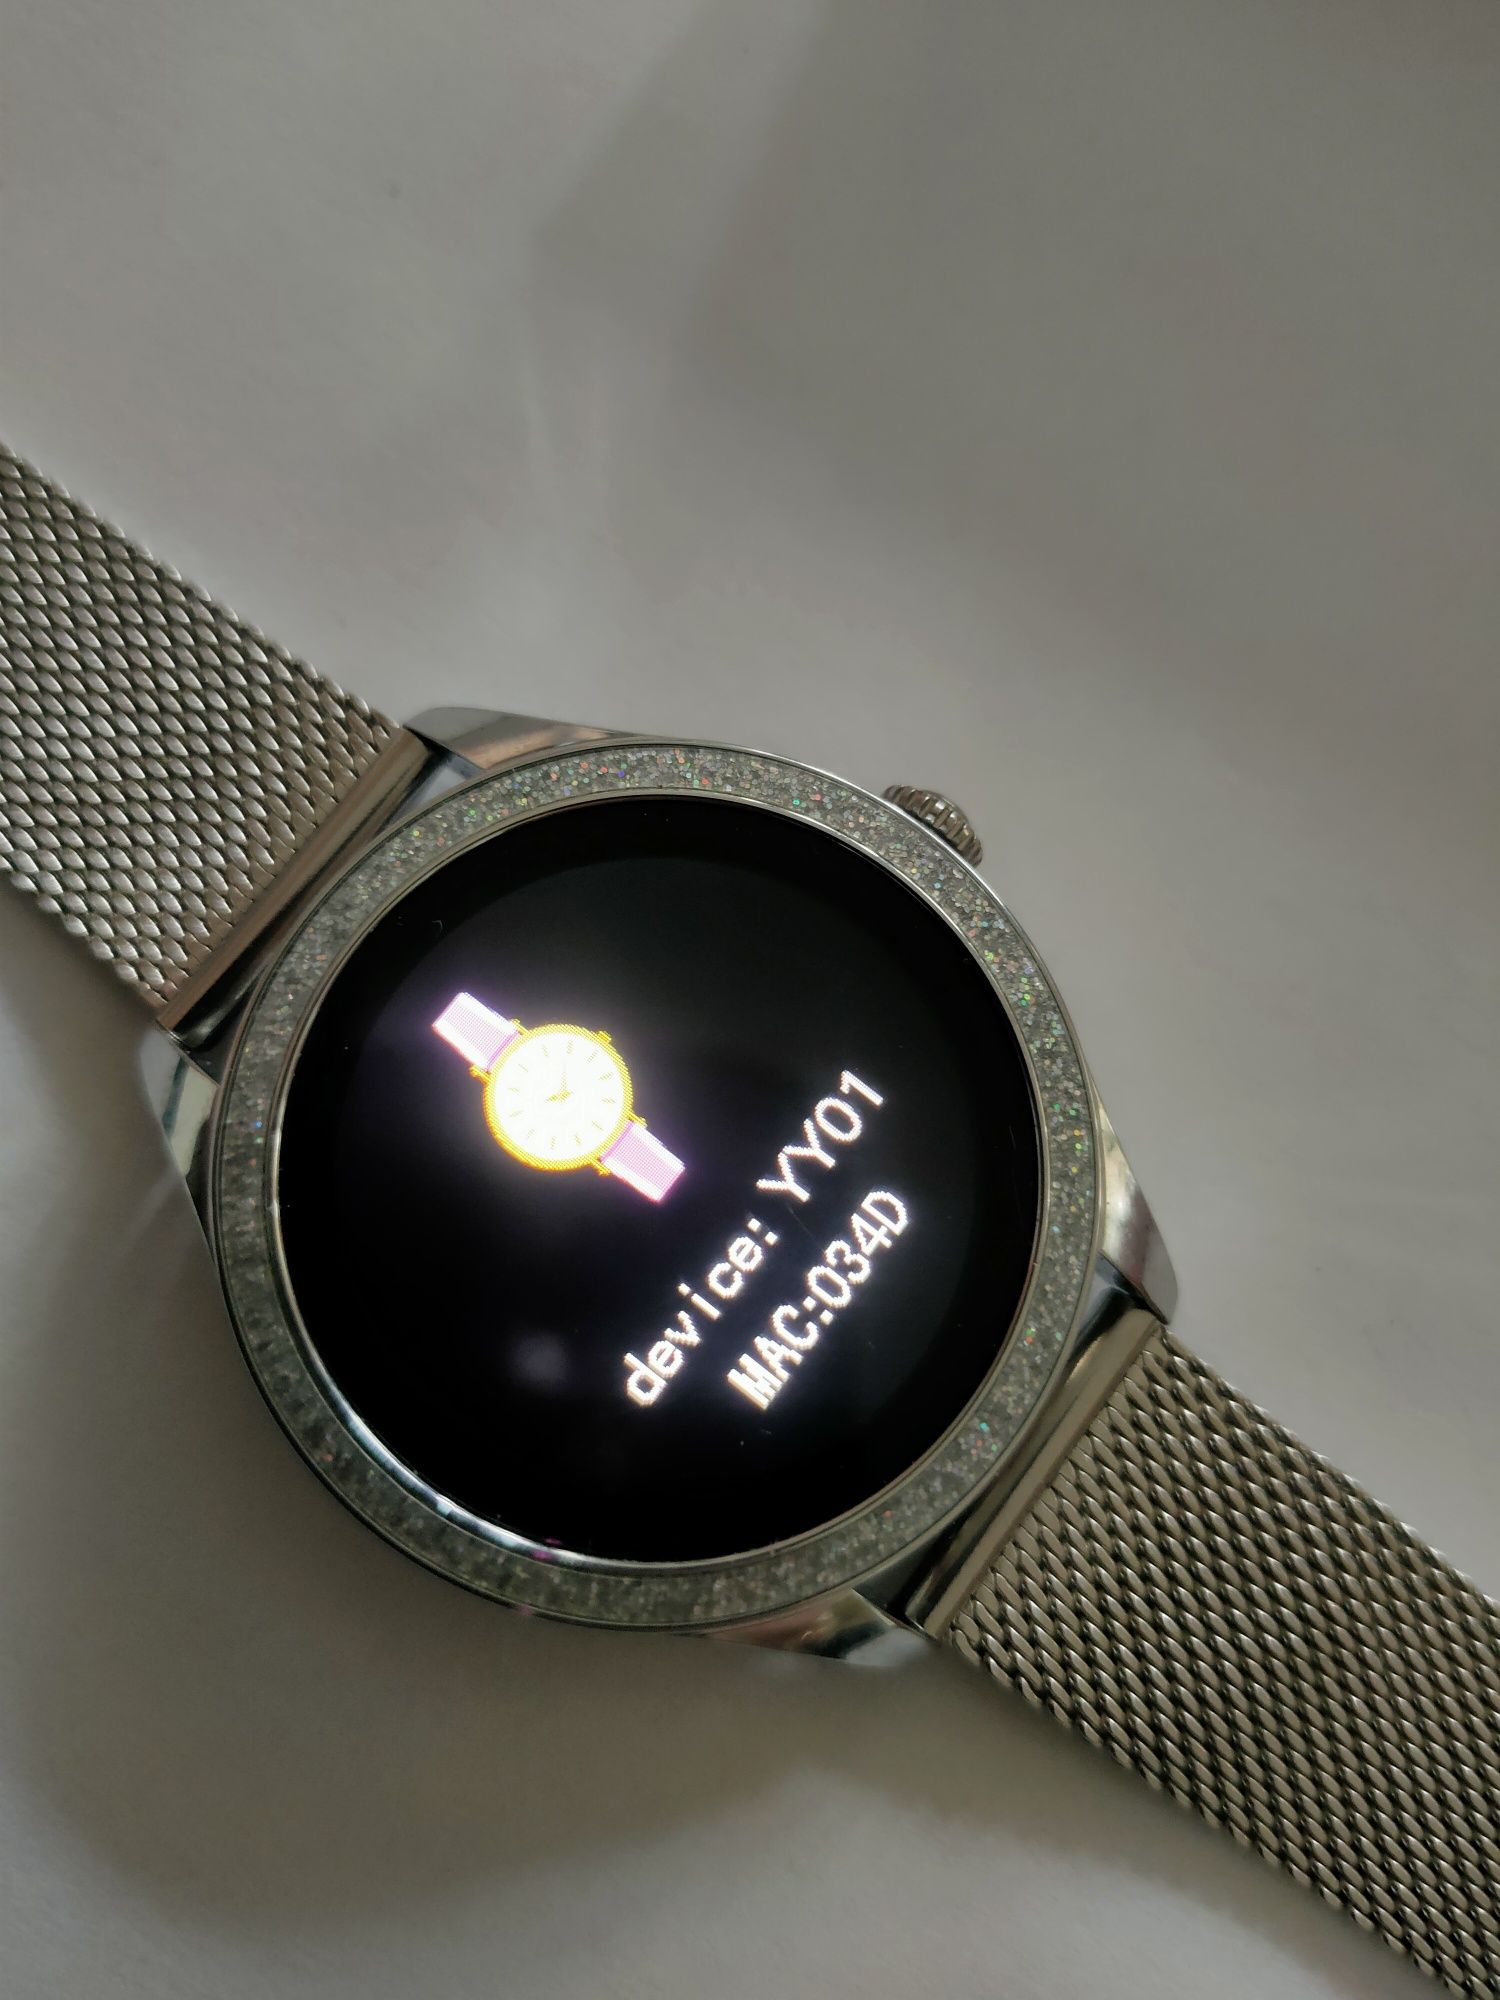 Smartwatch nowy tanio